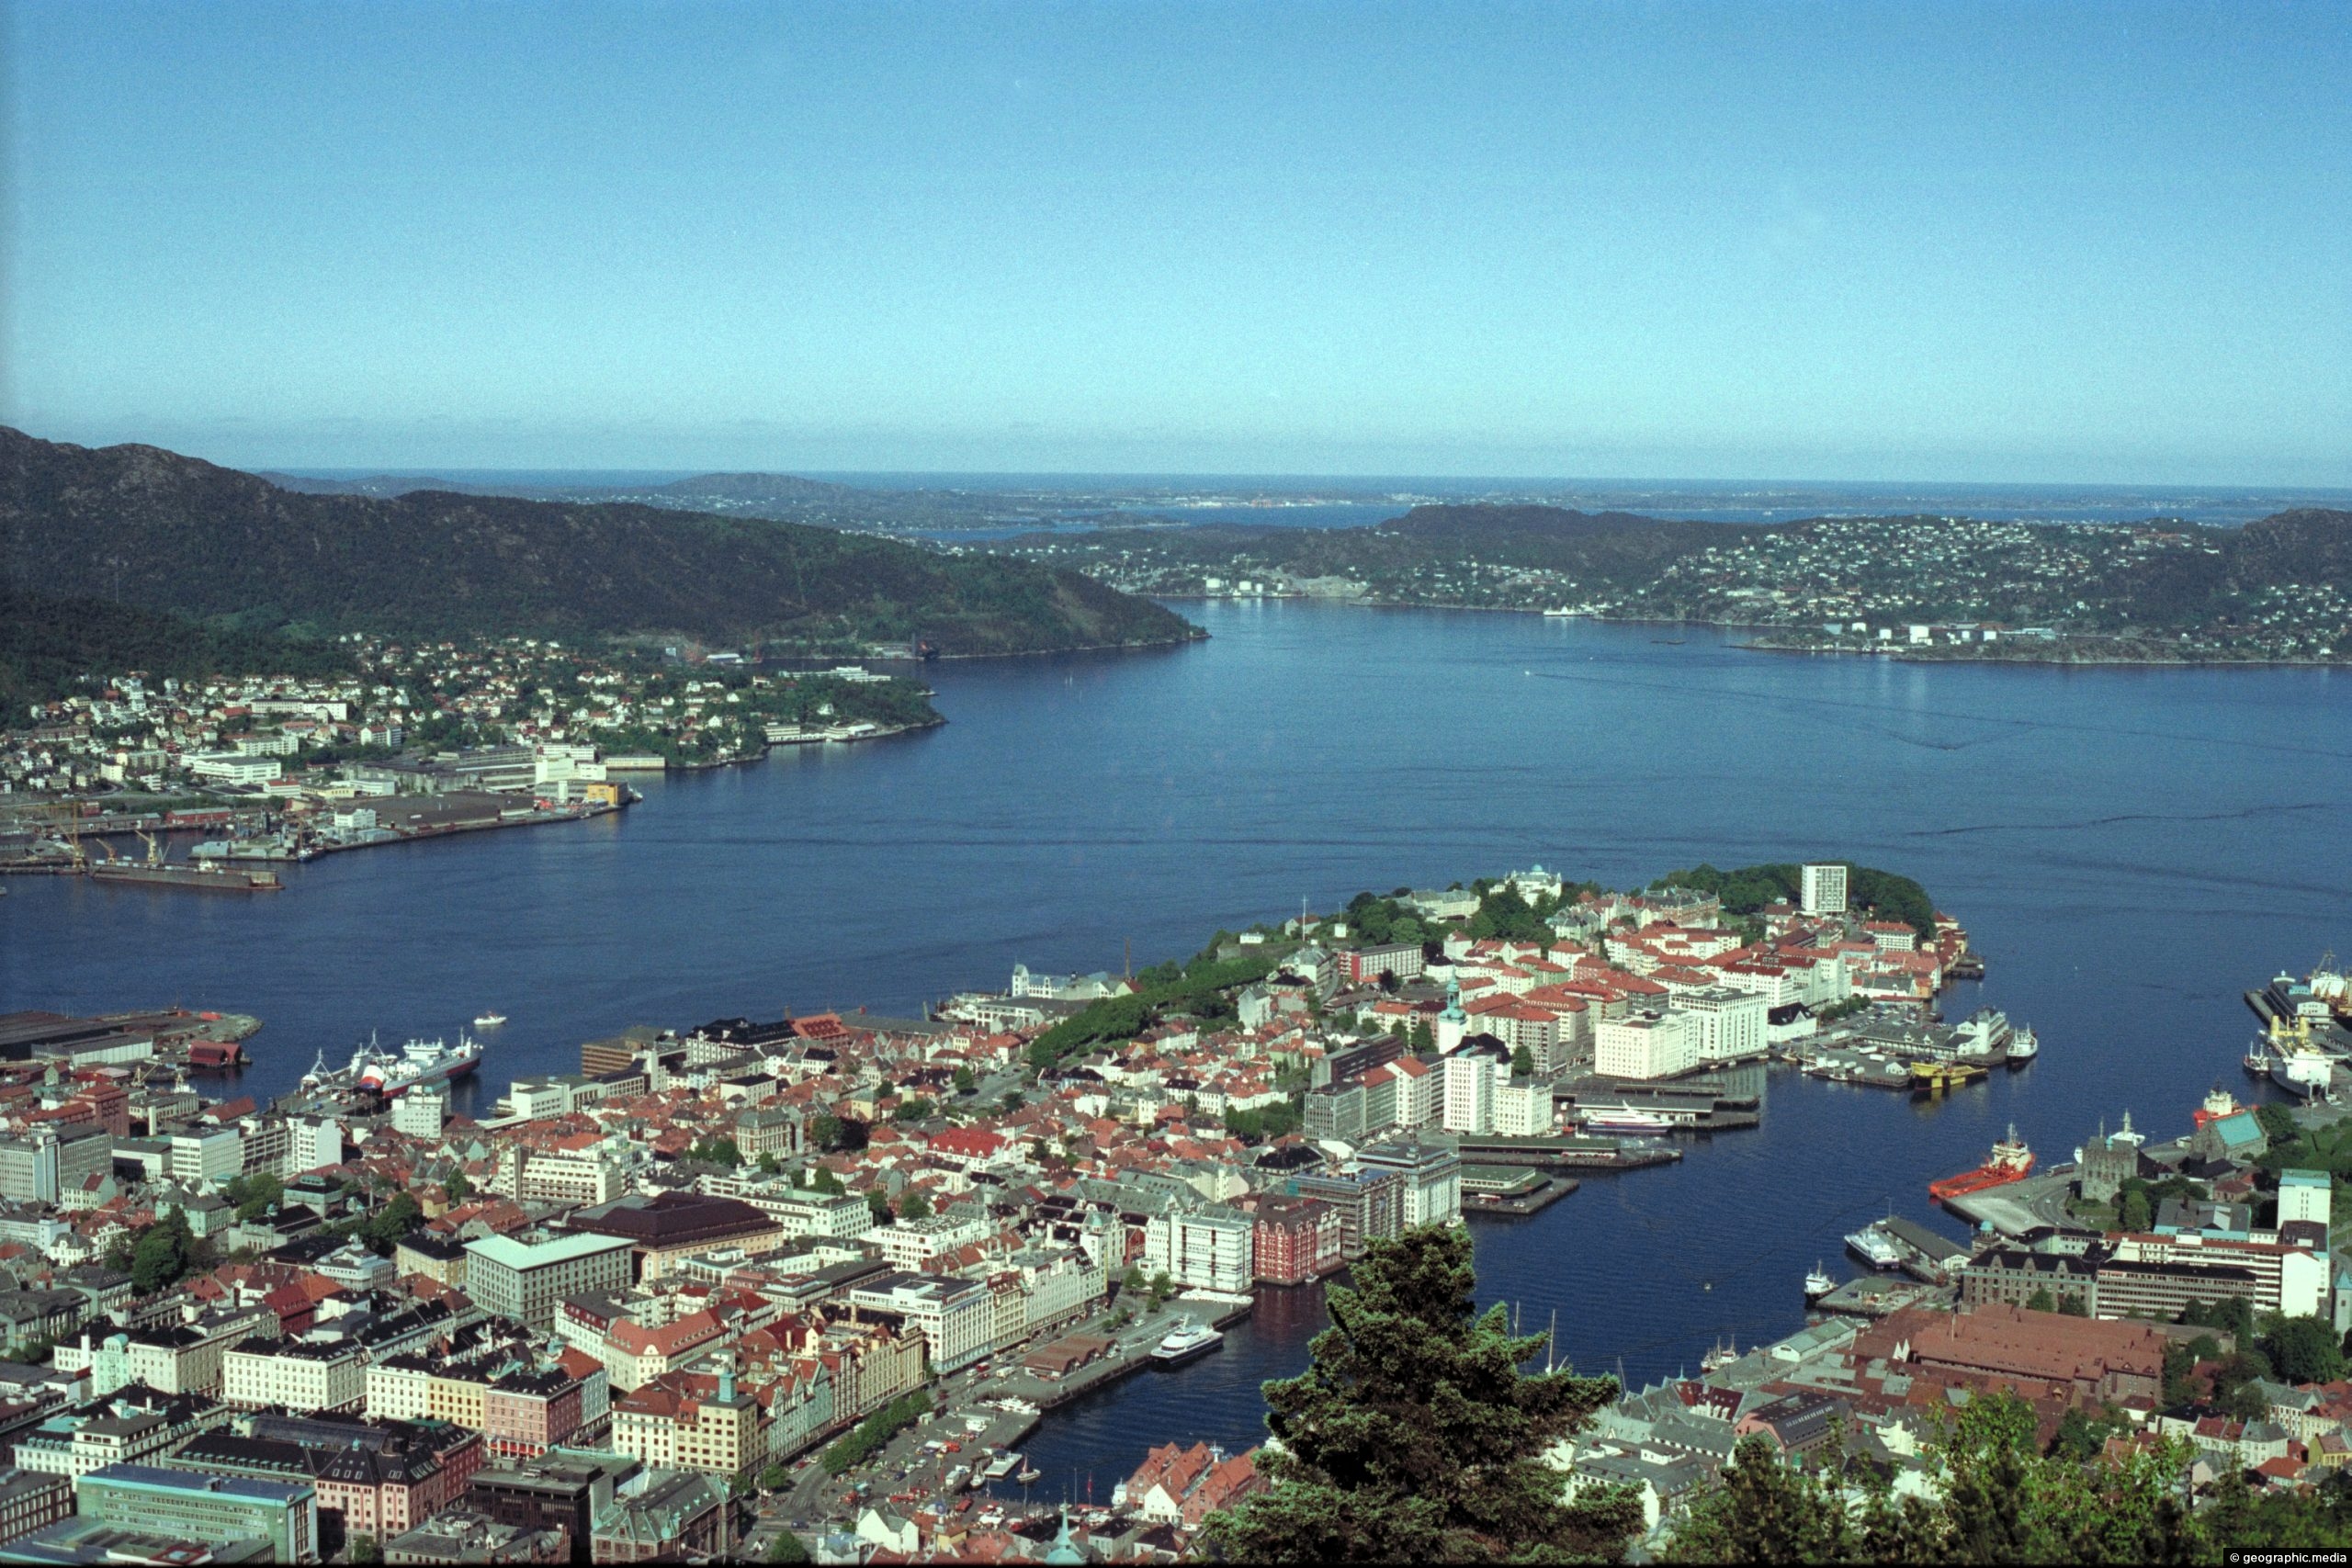 Vagen Harbor and Port in Bergen